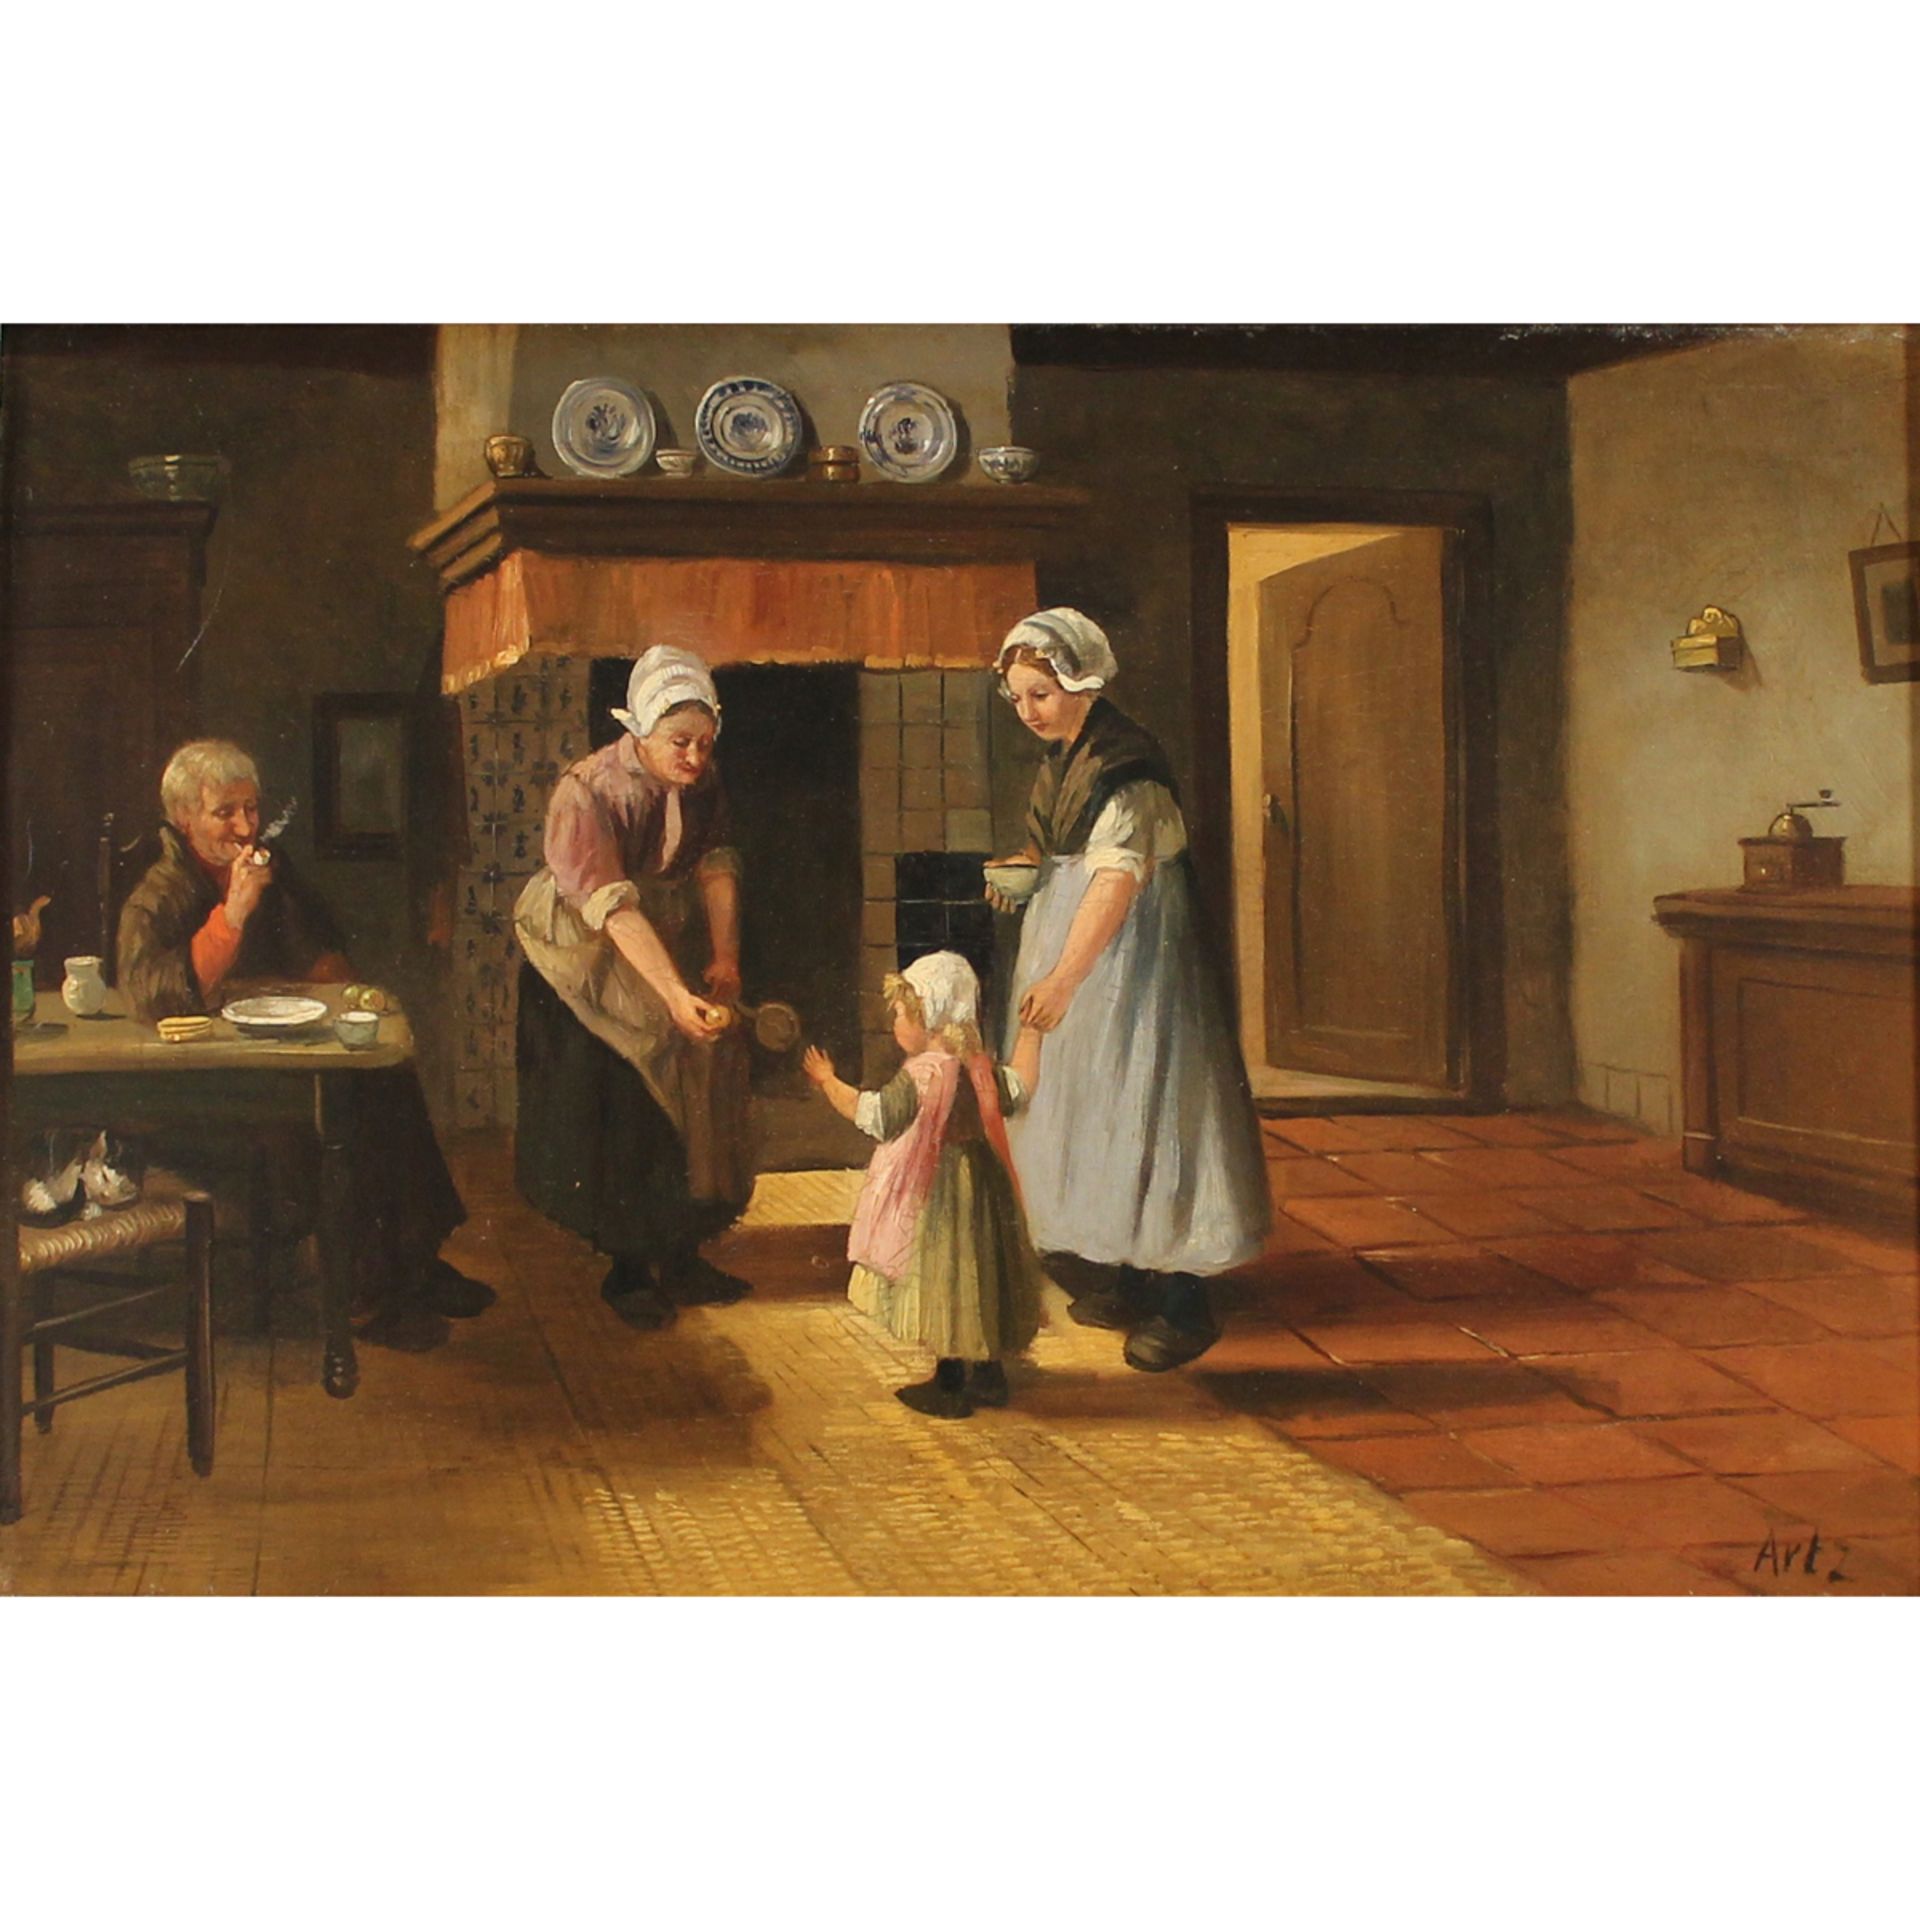 Scuola francese della fine del secolo XIX "Scena di vita familiare" - French school of the late 19th